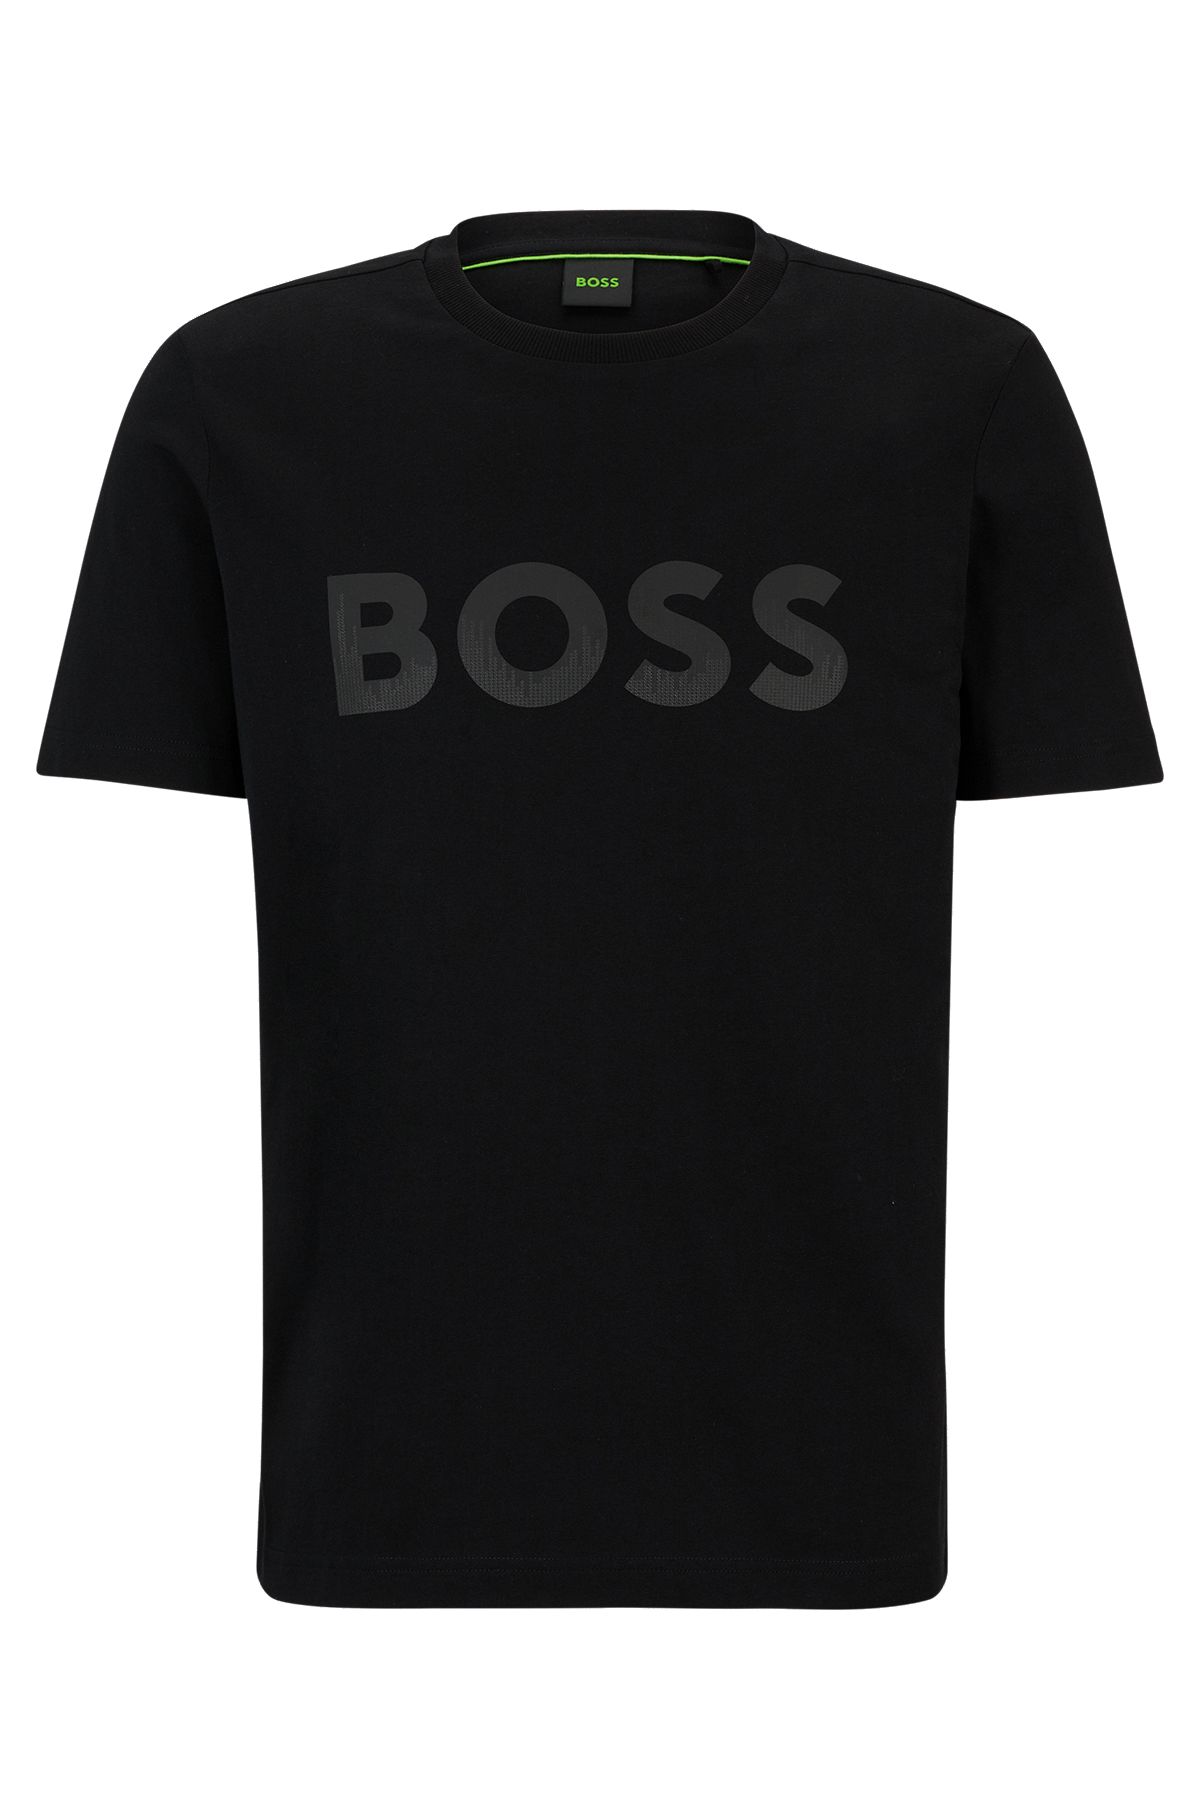 T-shirt en jersey de coton à logo hologramme réfléchissant décoratif, Noir